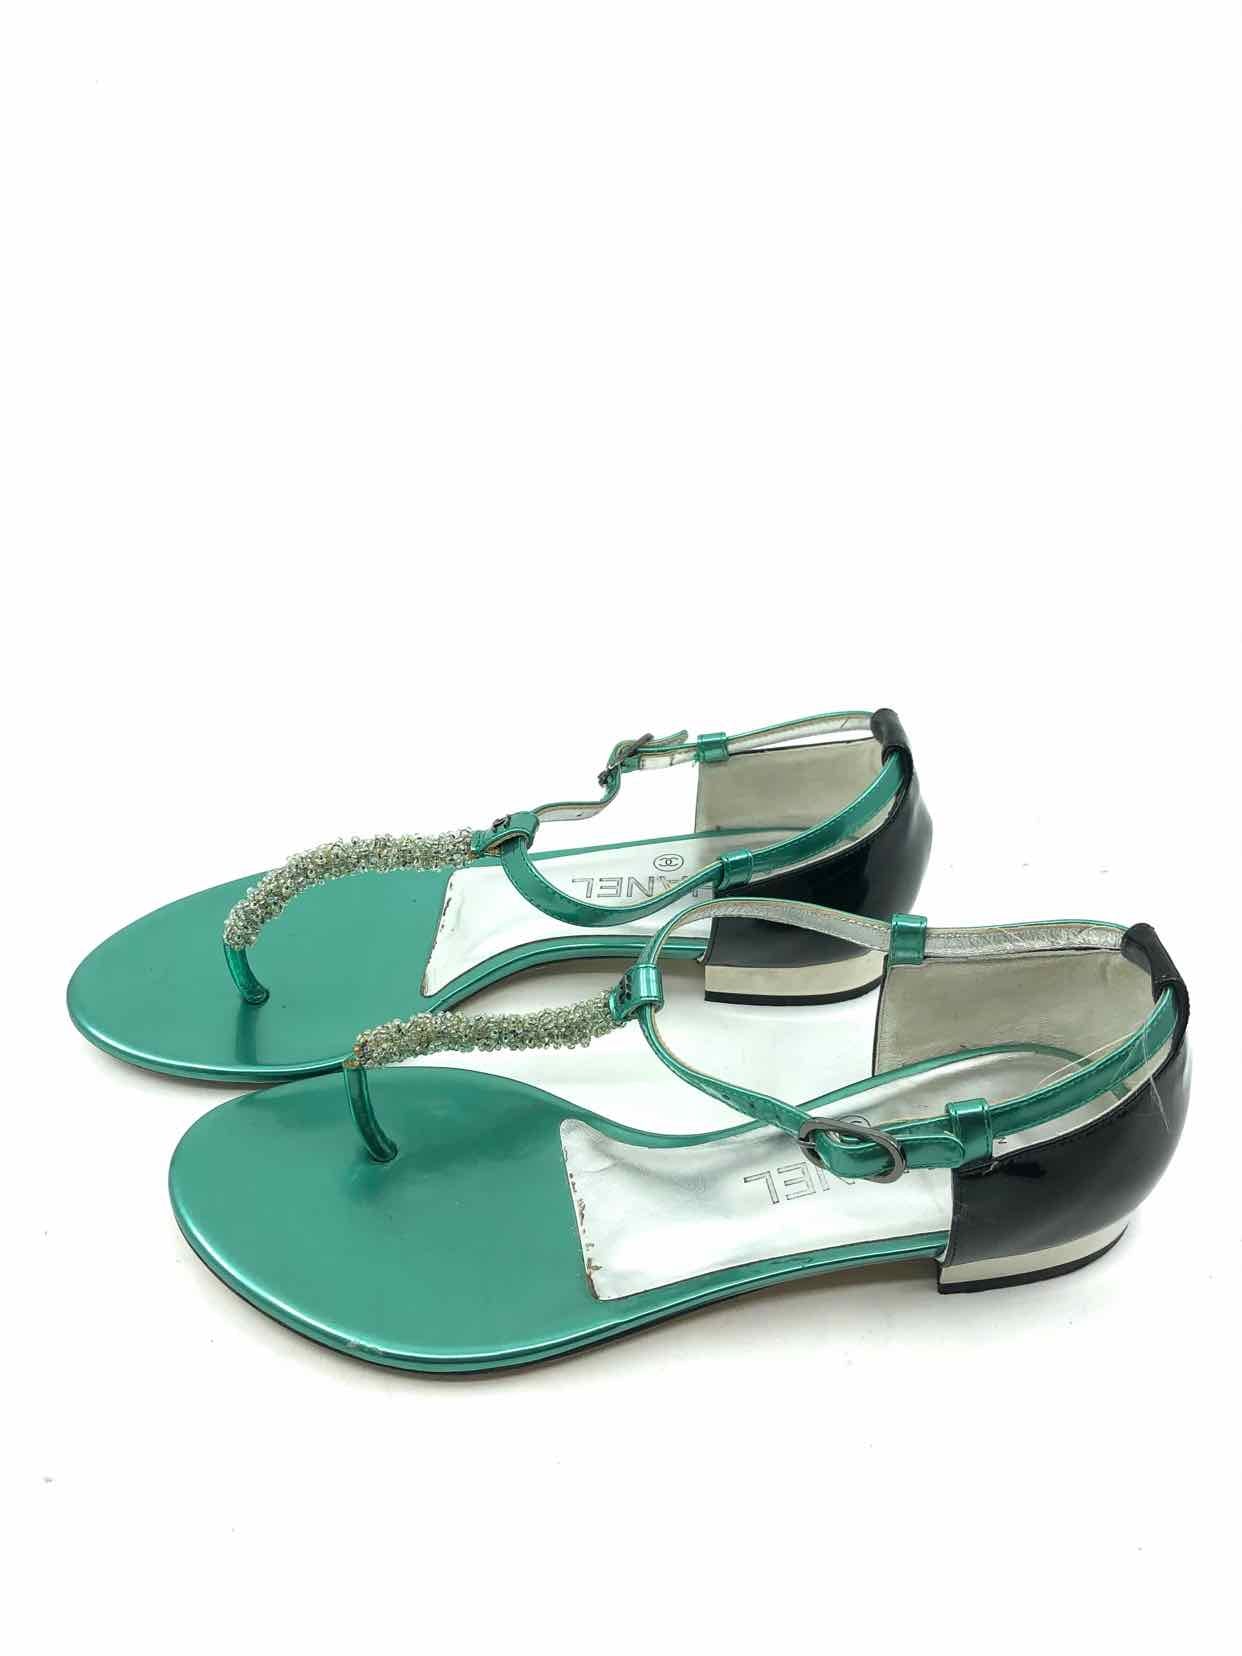 Olivia Mark – Beaded Braided Wedge Sandals – Multi-Colored – Olivia Mark